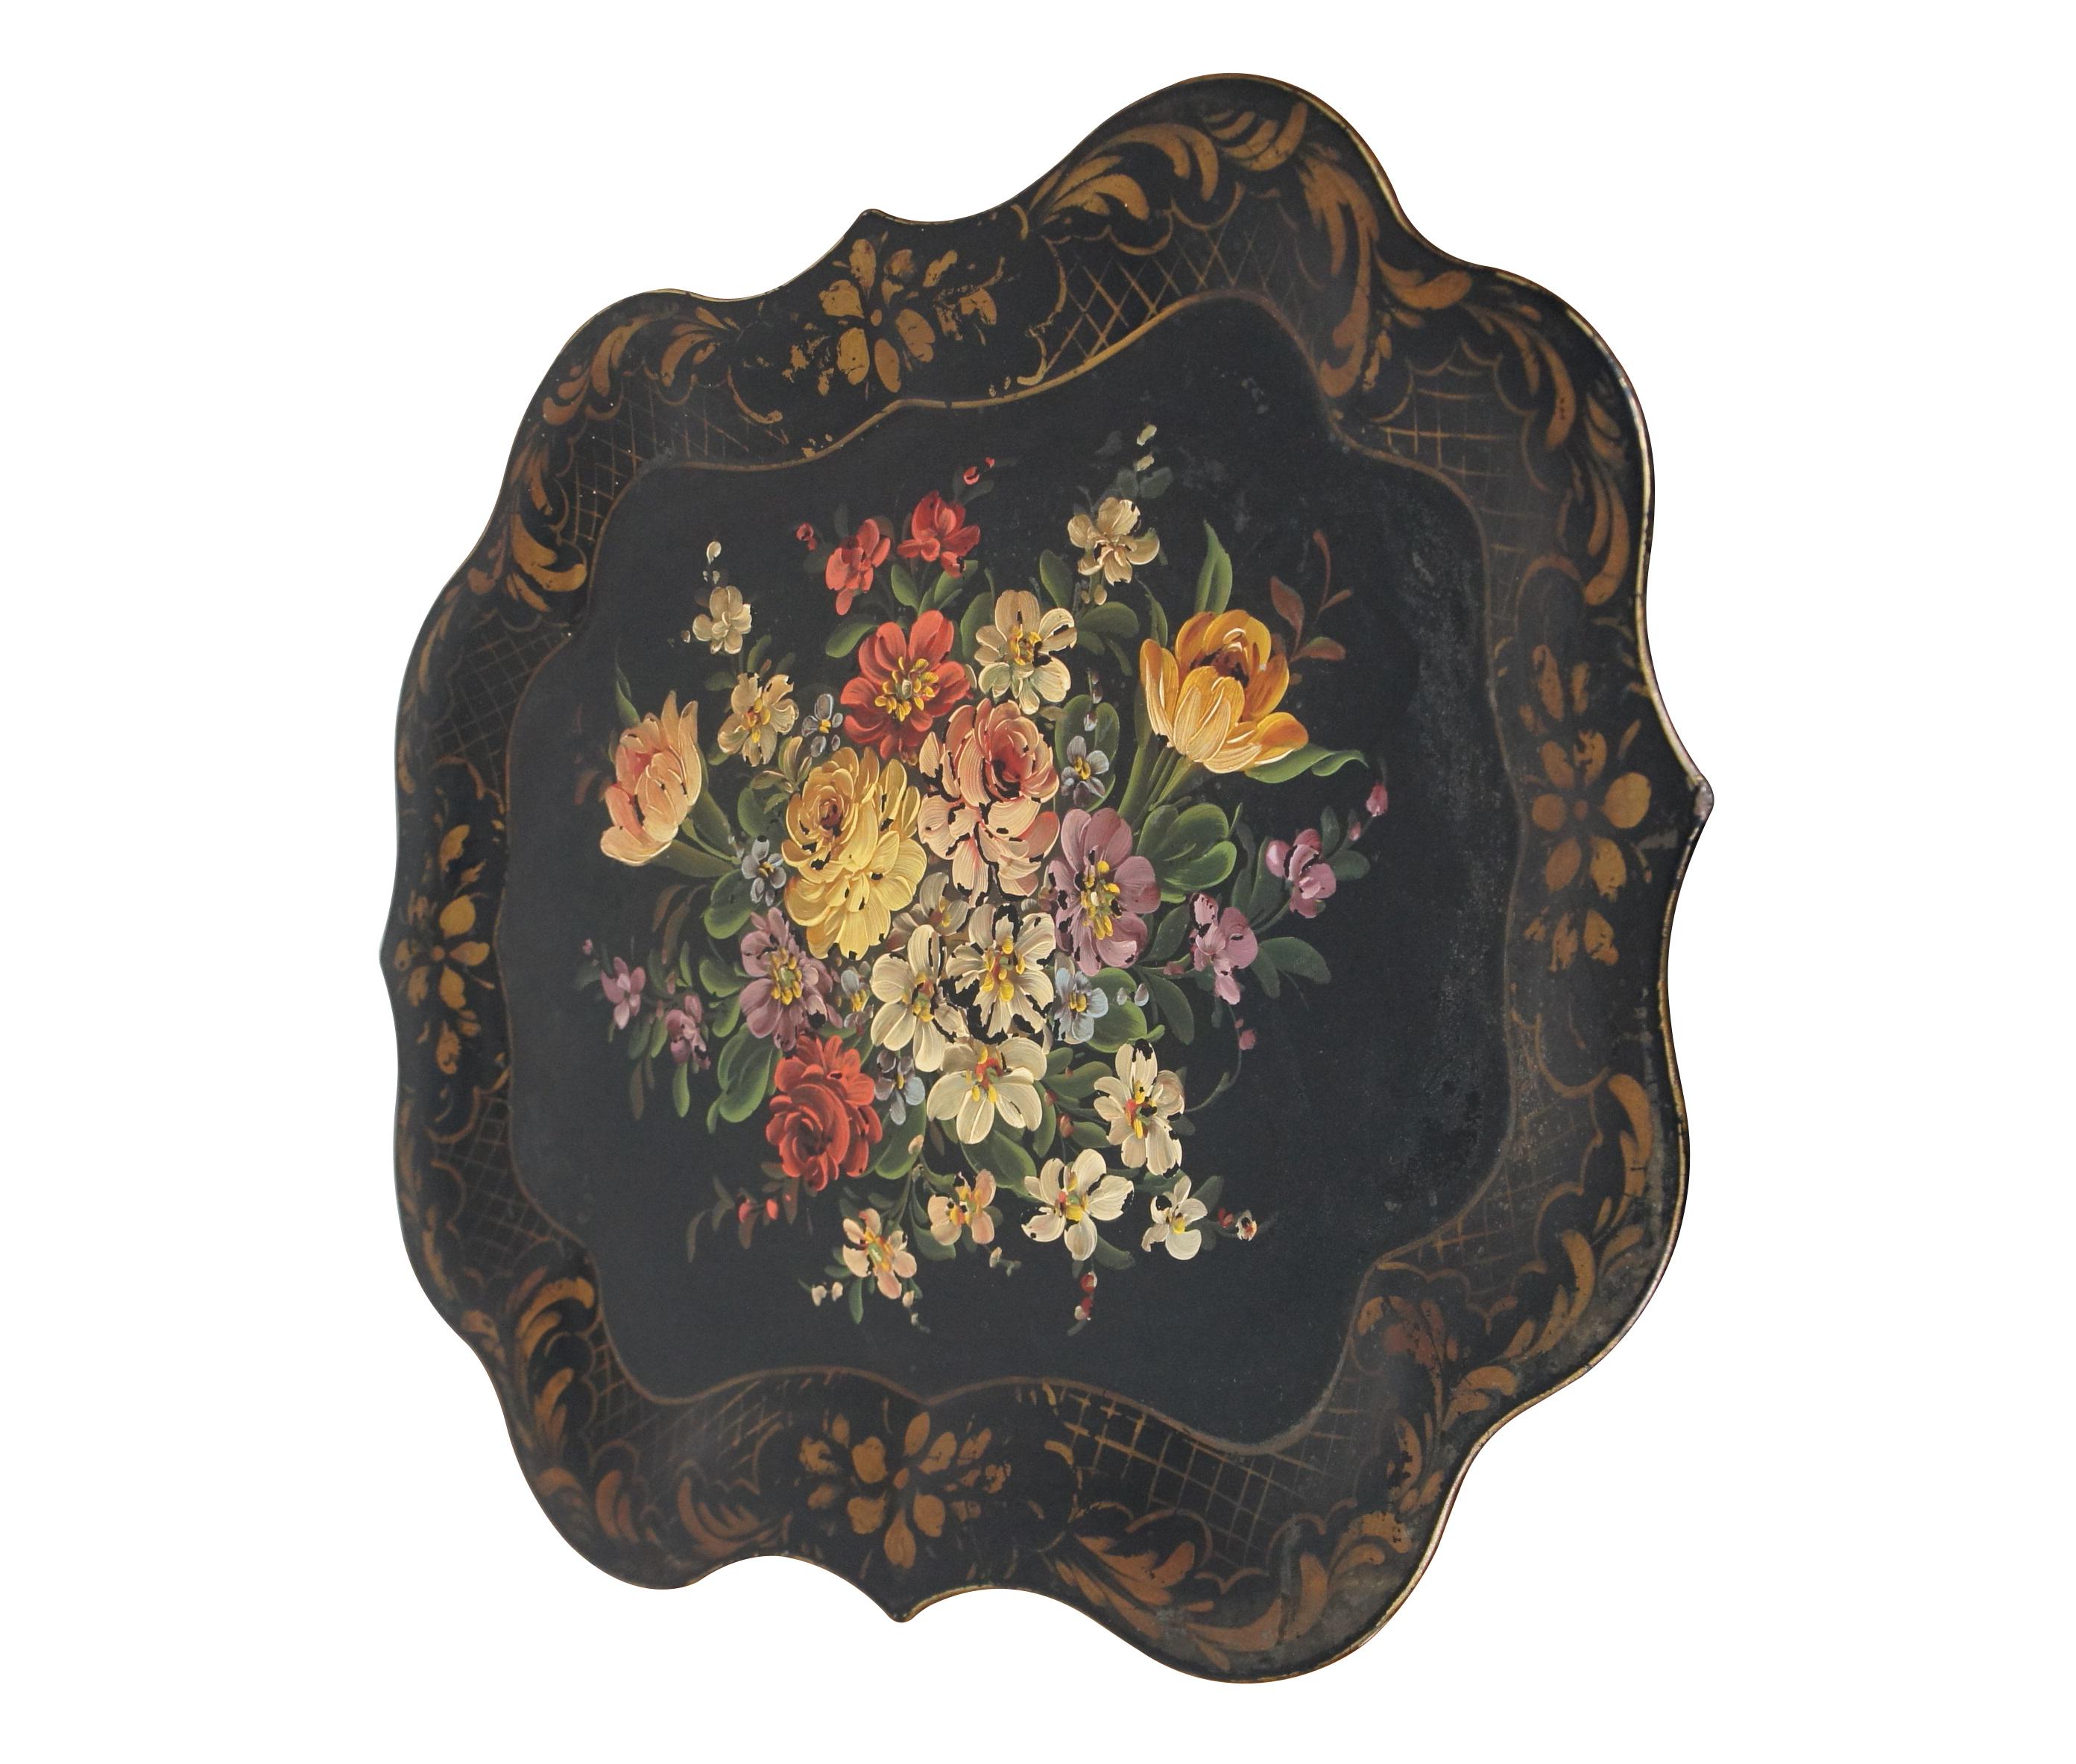 Folk Art Large Antique Scalloped Floral Botanical Toleware Serving Tray Platter 25